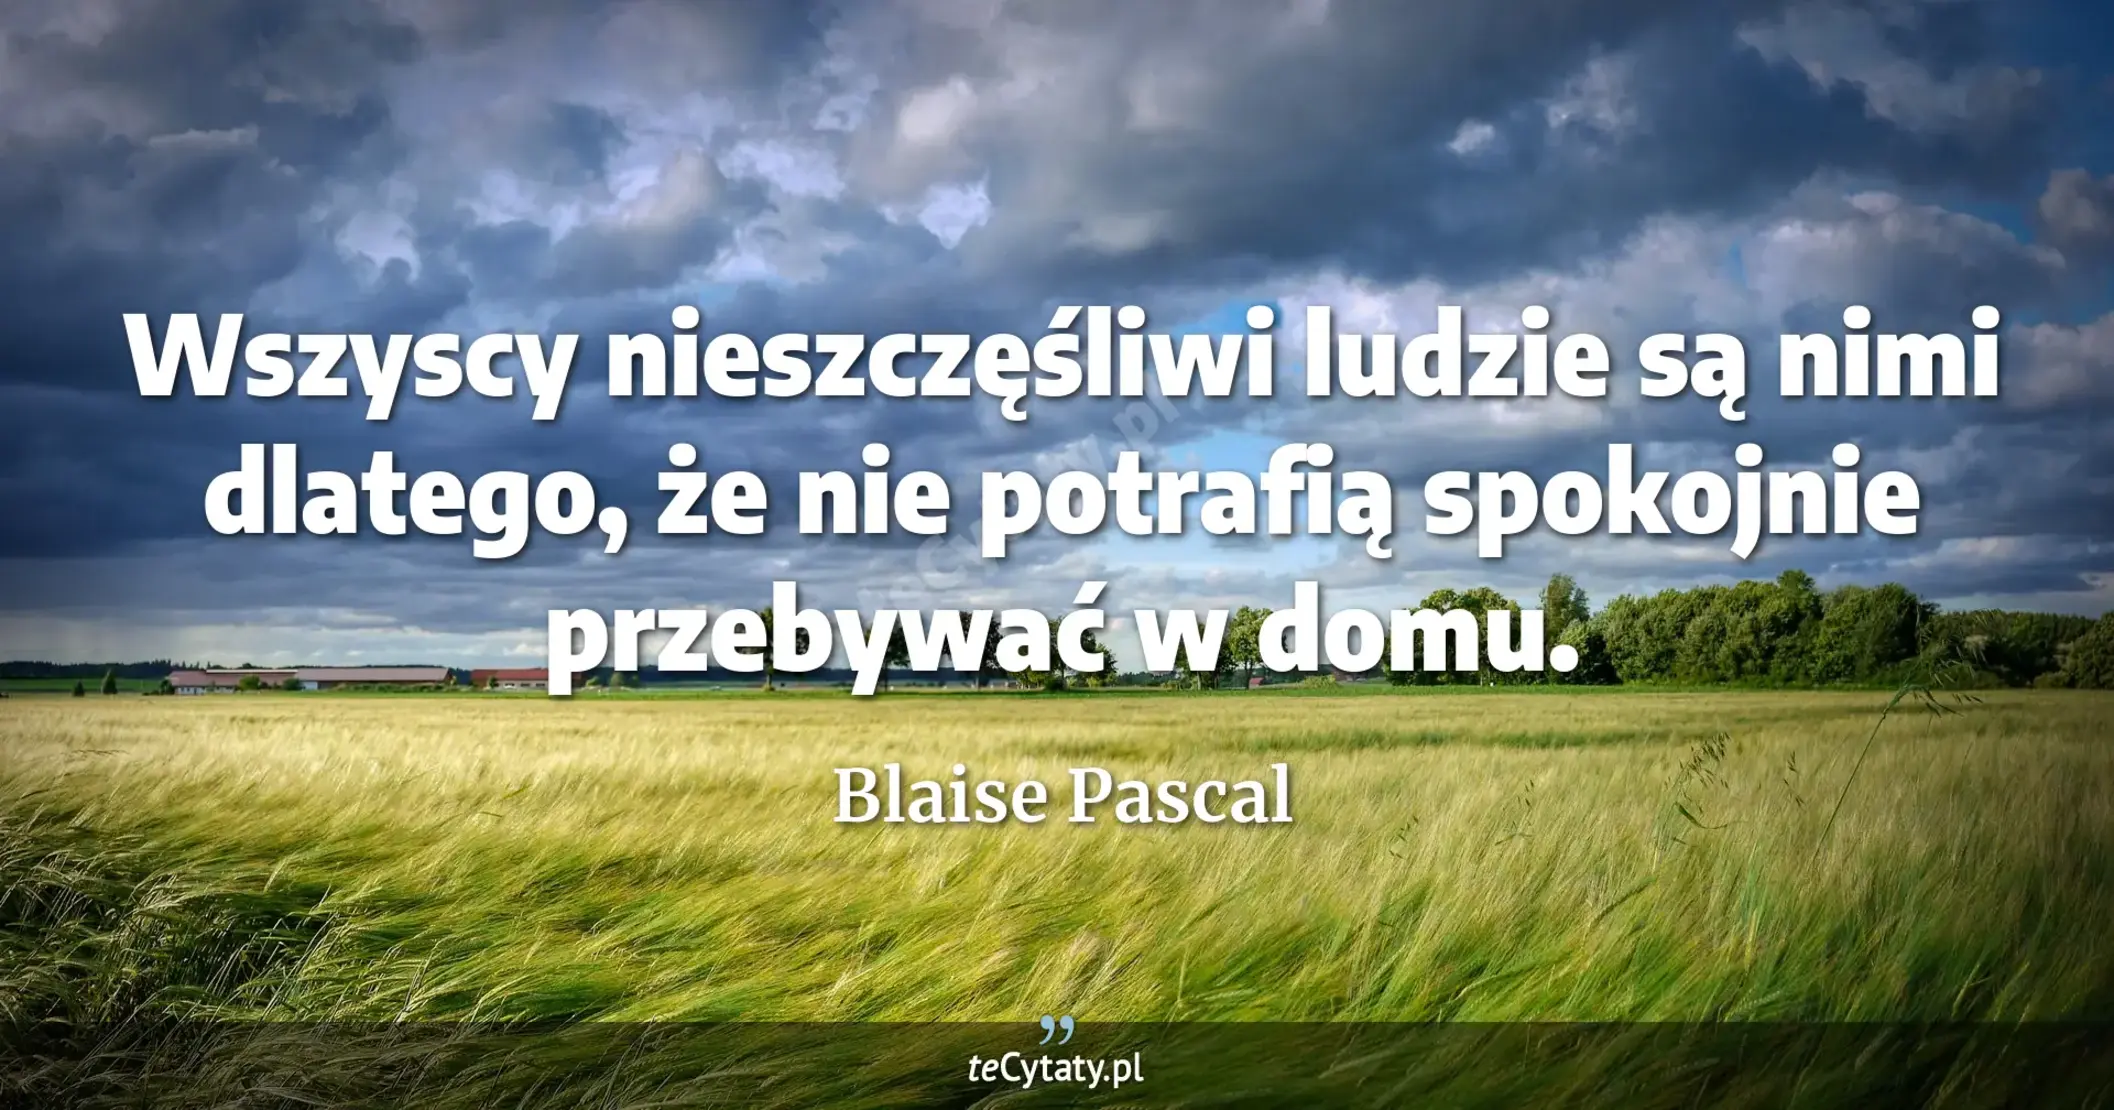 Wszyscy nieszczęśliwi ludzie są nimi dlatego, że nie potrafią spokojnie przebywać w domu. - Blaise Pascal